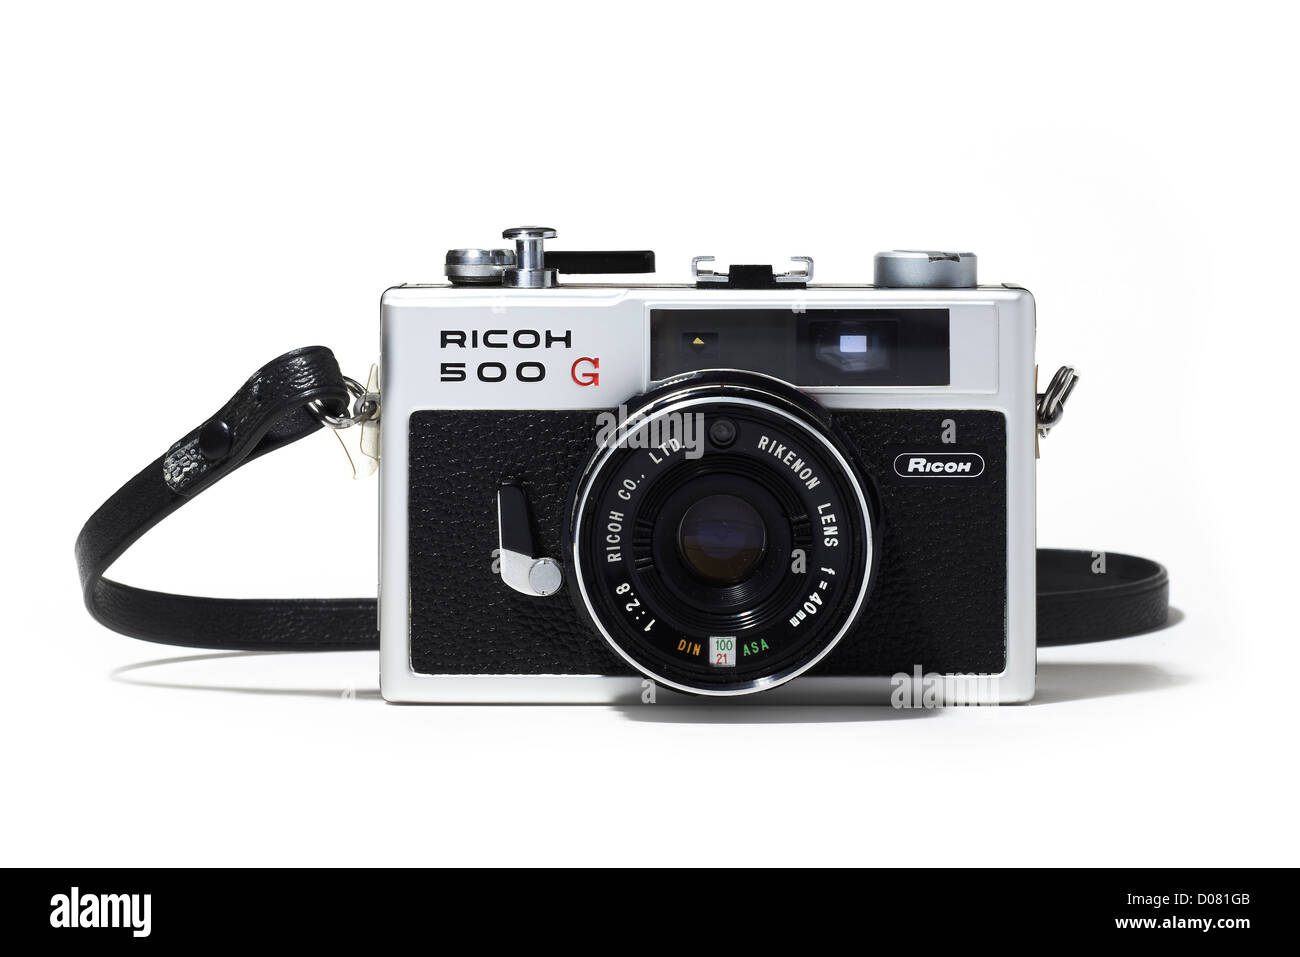 Ricoh 500G retrò fotocamera a pellicola 35mm classic non digitale retrò cercando cromato nero argento 40mm lente non telemetro leica a partire dagli anni settanta Foto Stock